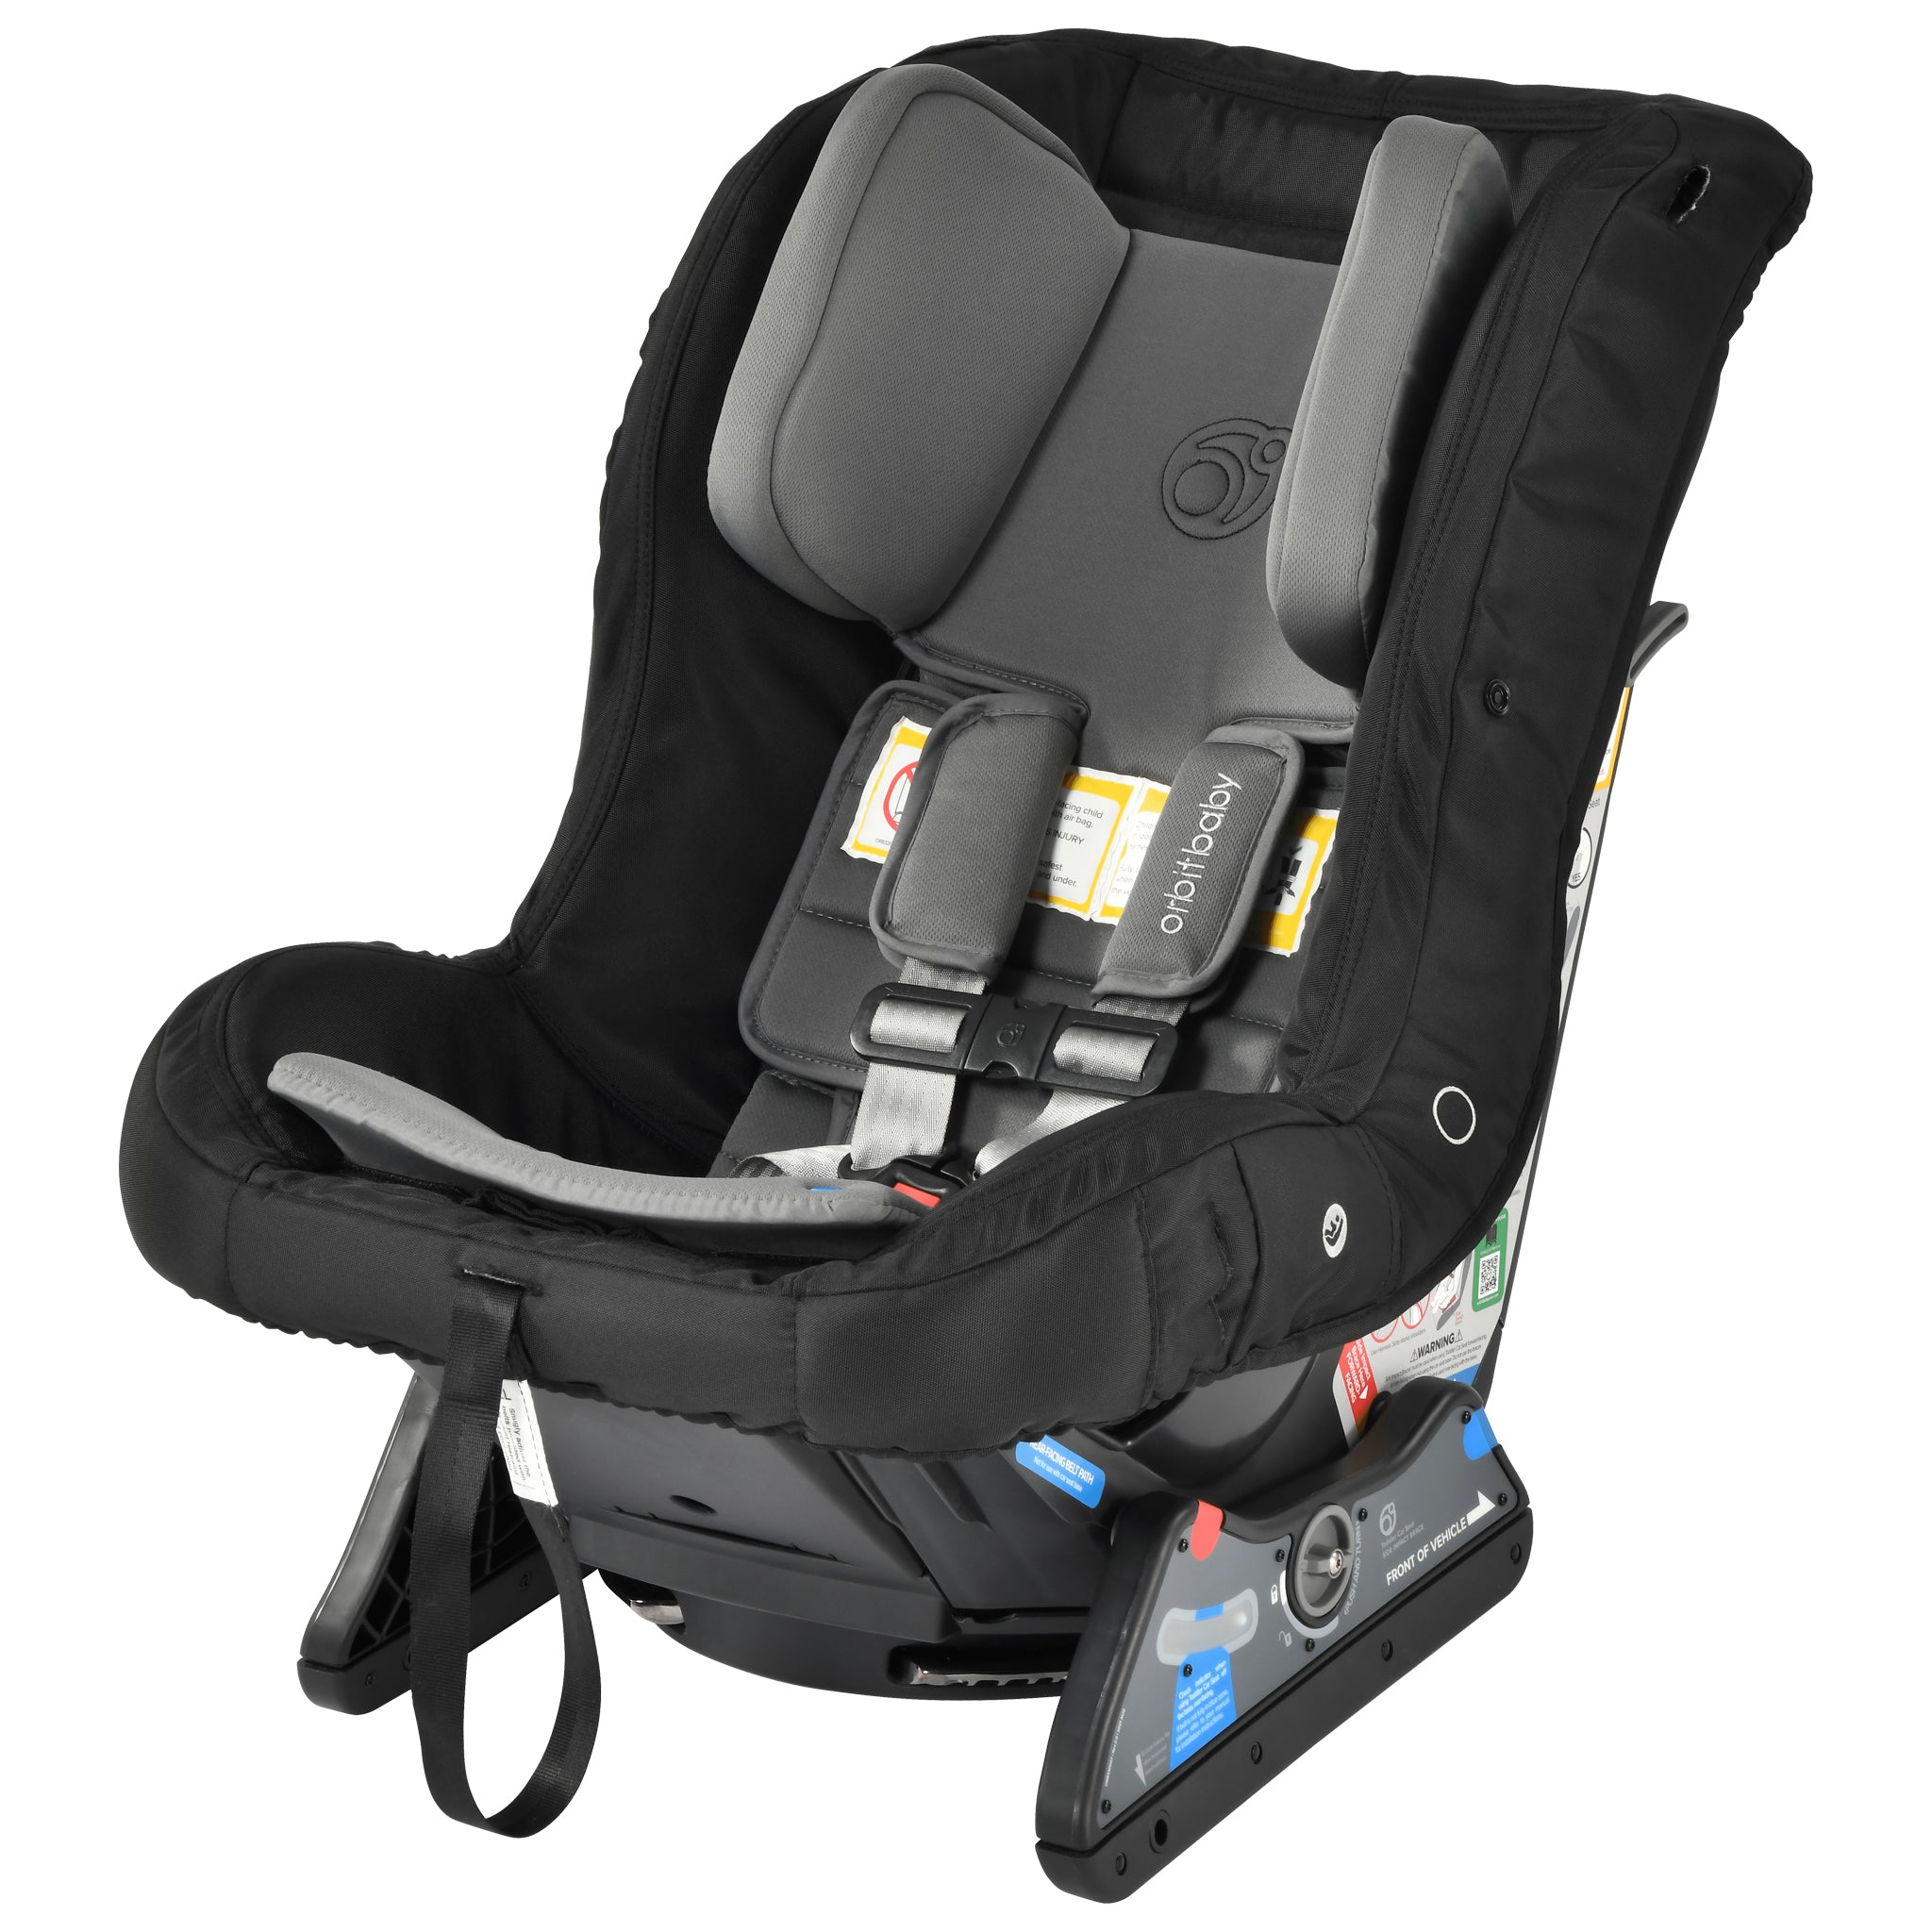 Orbit Baby G5 Toddler Car Seat in Melange Navy